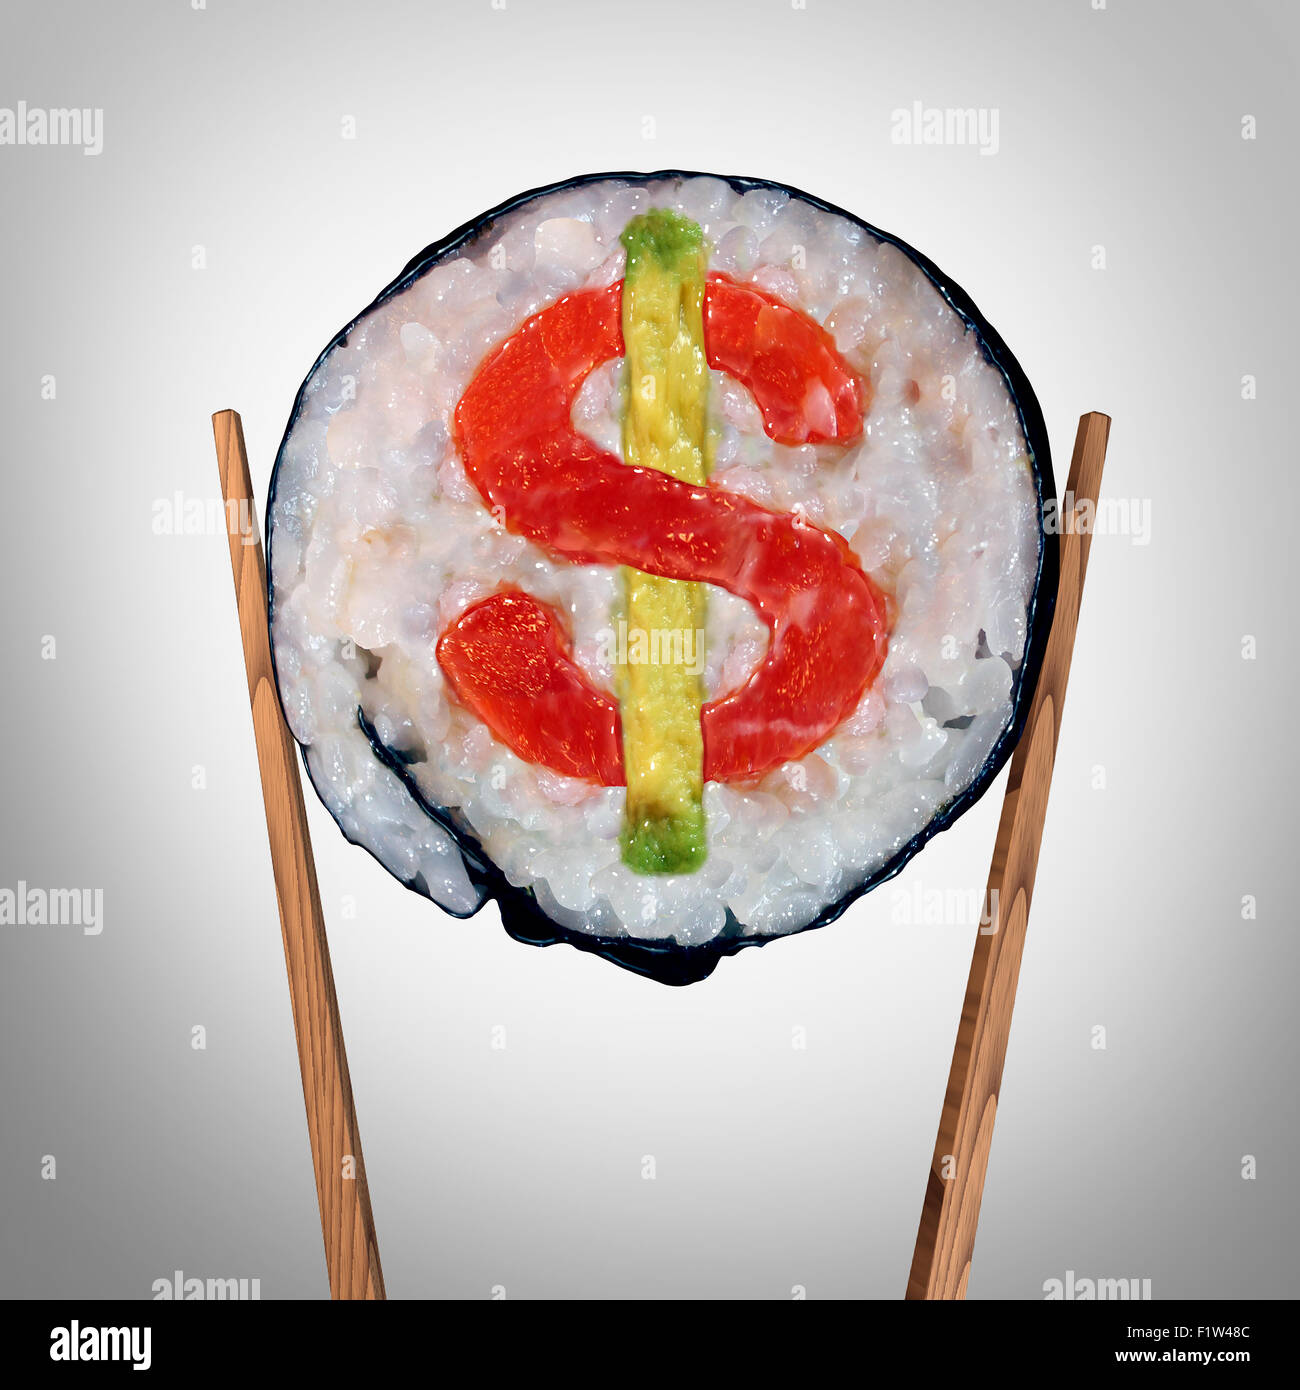 Gastronomie und teure riesige Lebensmittel Rechnung Symbol oder überteuerten Restaurants Preisschild wie ein Stück frisches Sushi gehaltenen Chop sticks mit ein Dollarzeichen in der Rolle als Symbol für Unterhaltung Kosten oder Ablagerung Service. Stockfoto